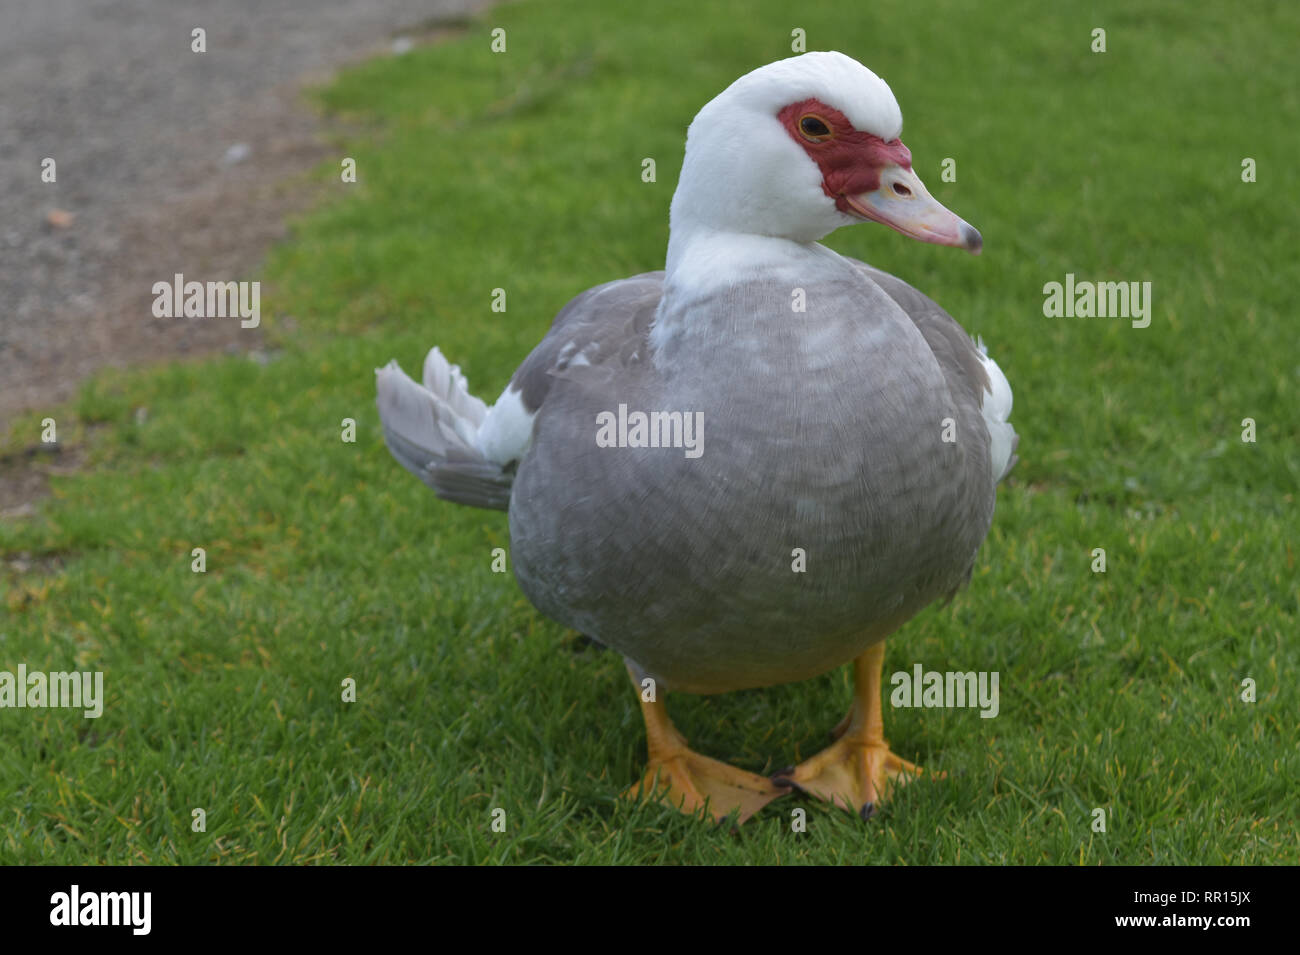 Süße weiße und graue Ente auf einem grasbewachsenen Hügel Stockfotografie -  Alamy